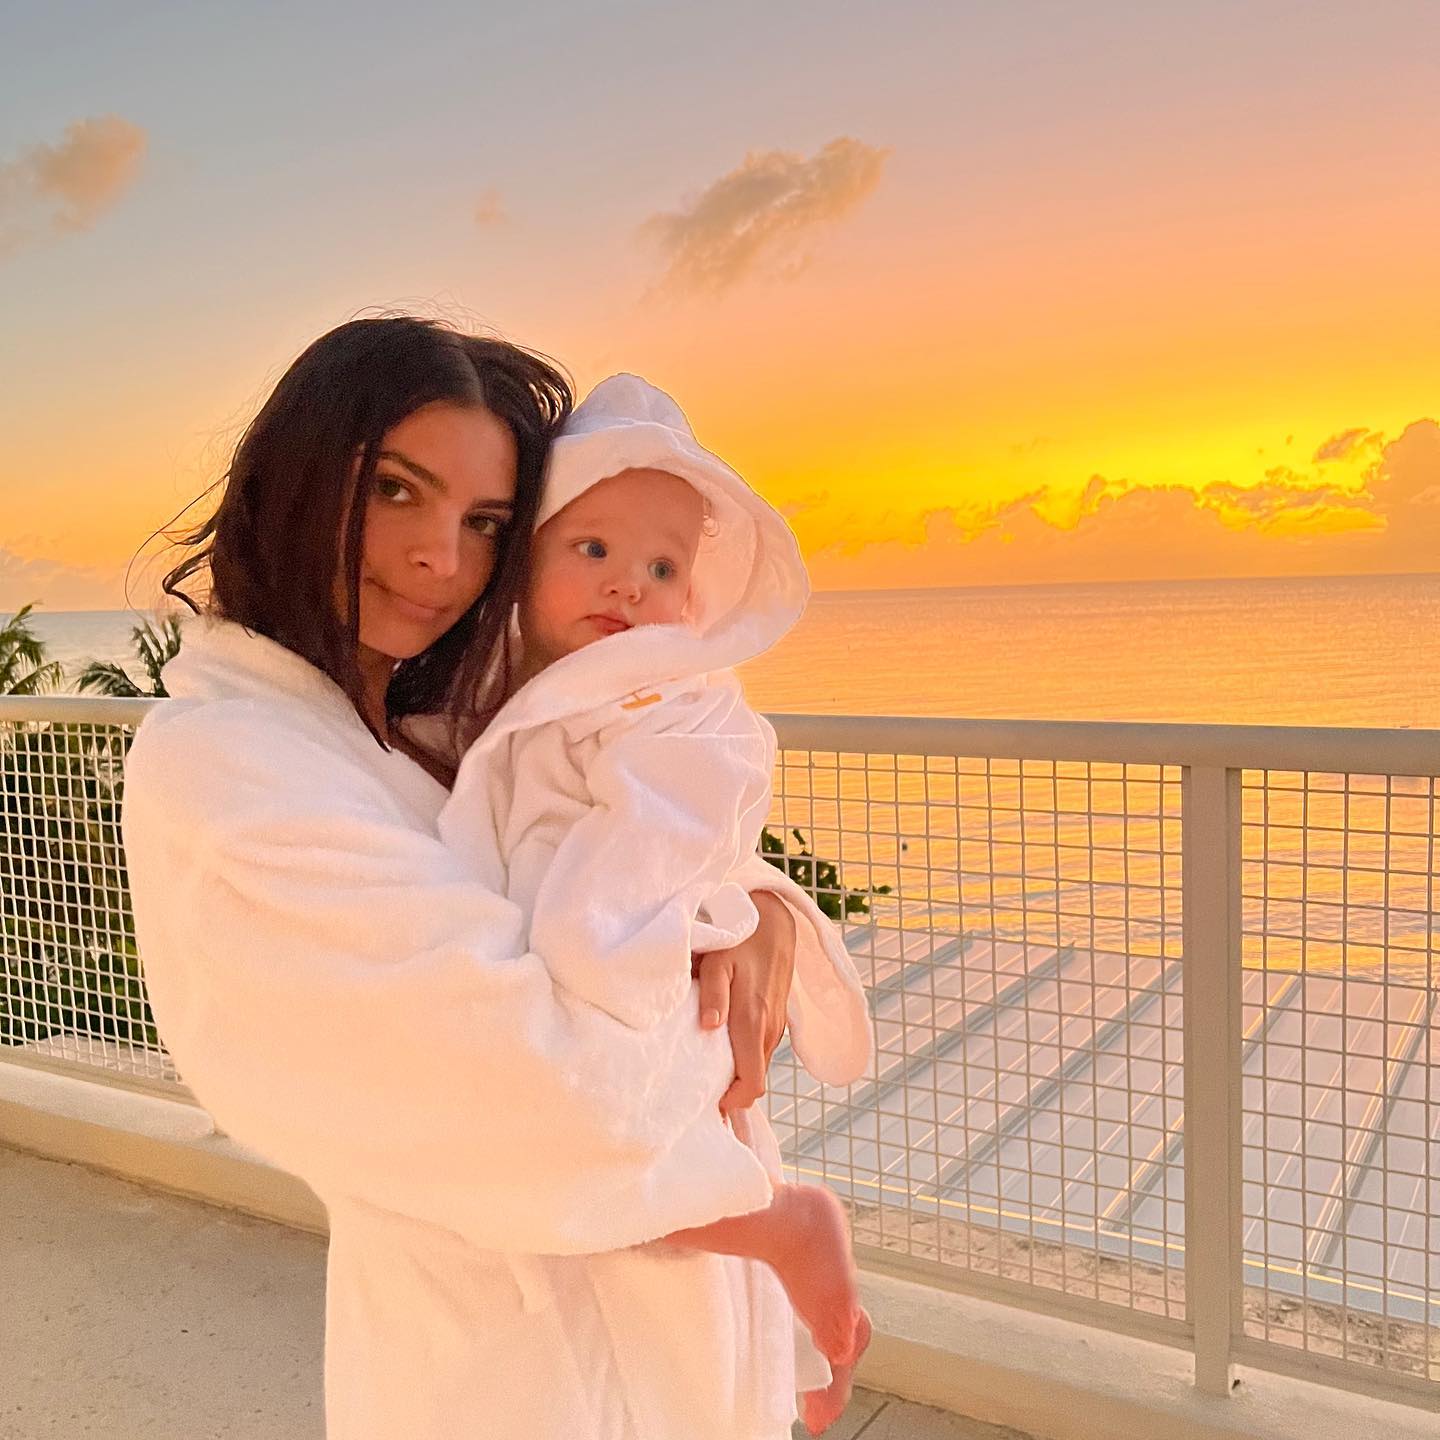 La modelo Emily Ratajkowski con su bebé en brazos, ambos en albornoz, en una puesta de sol